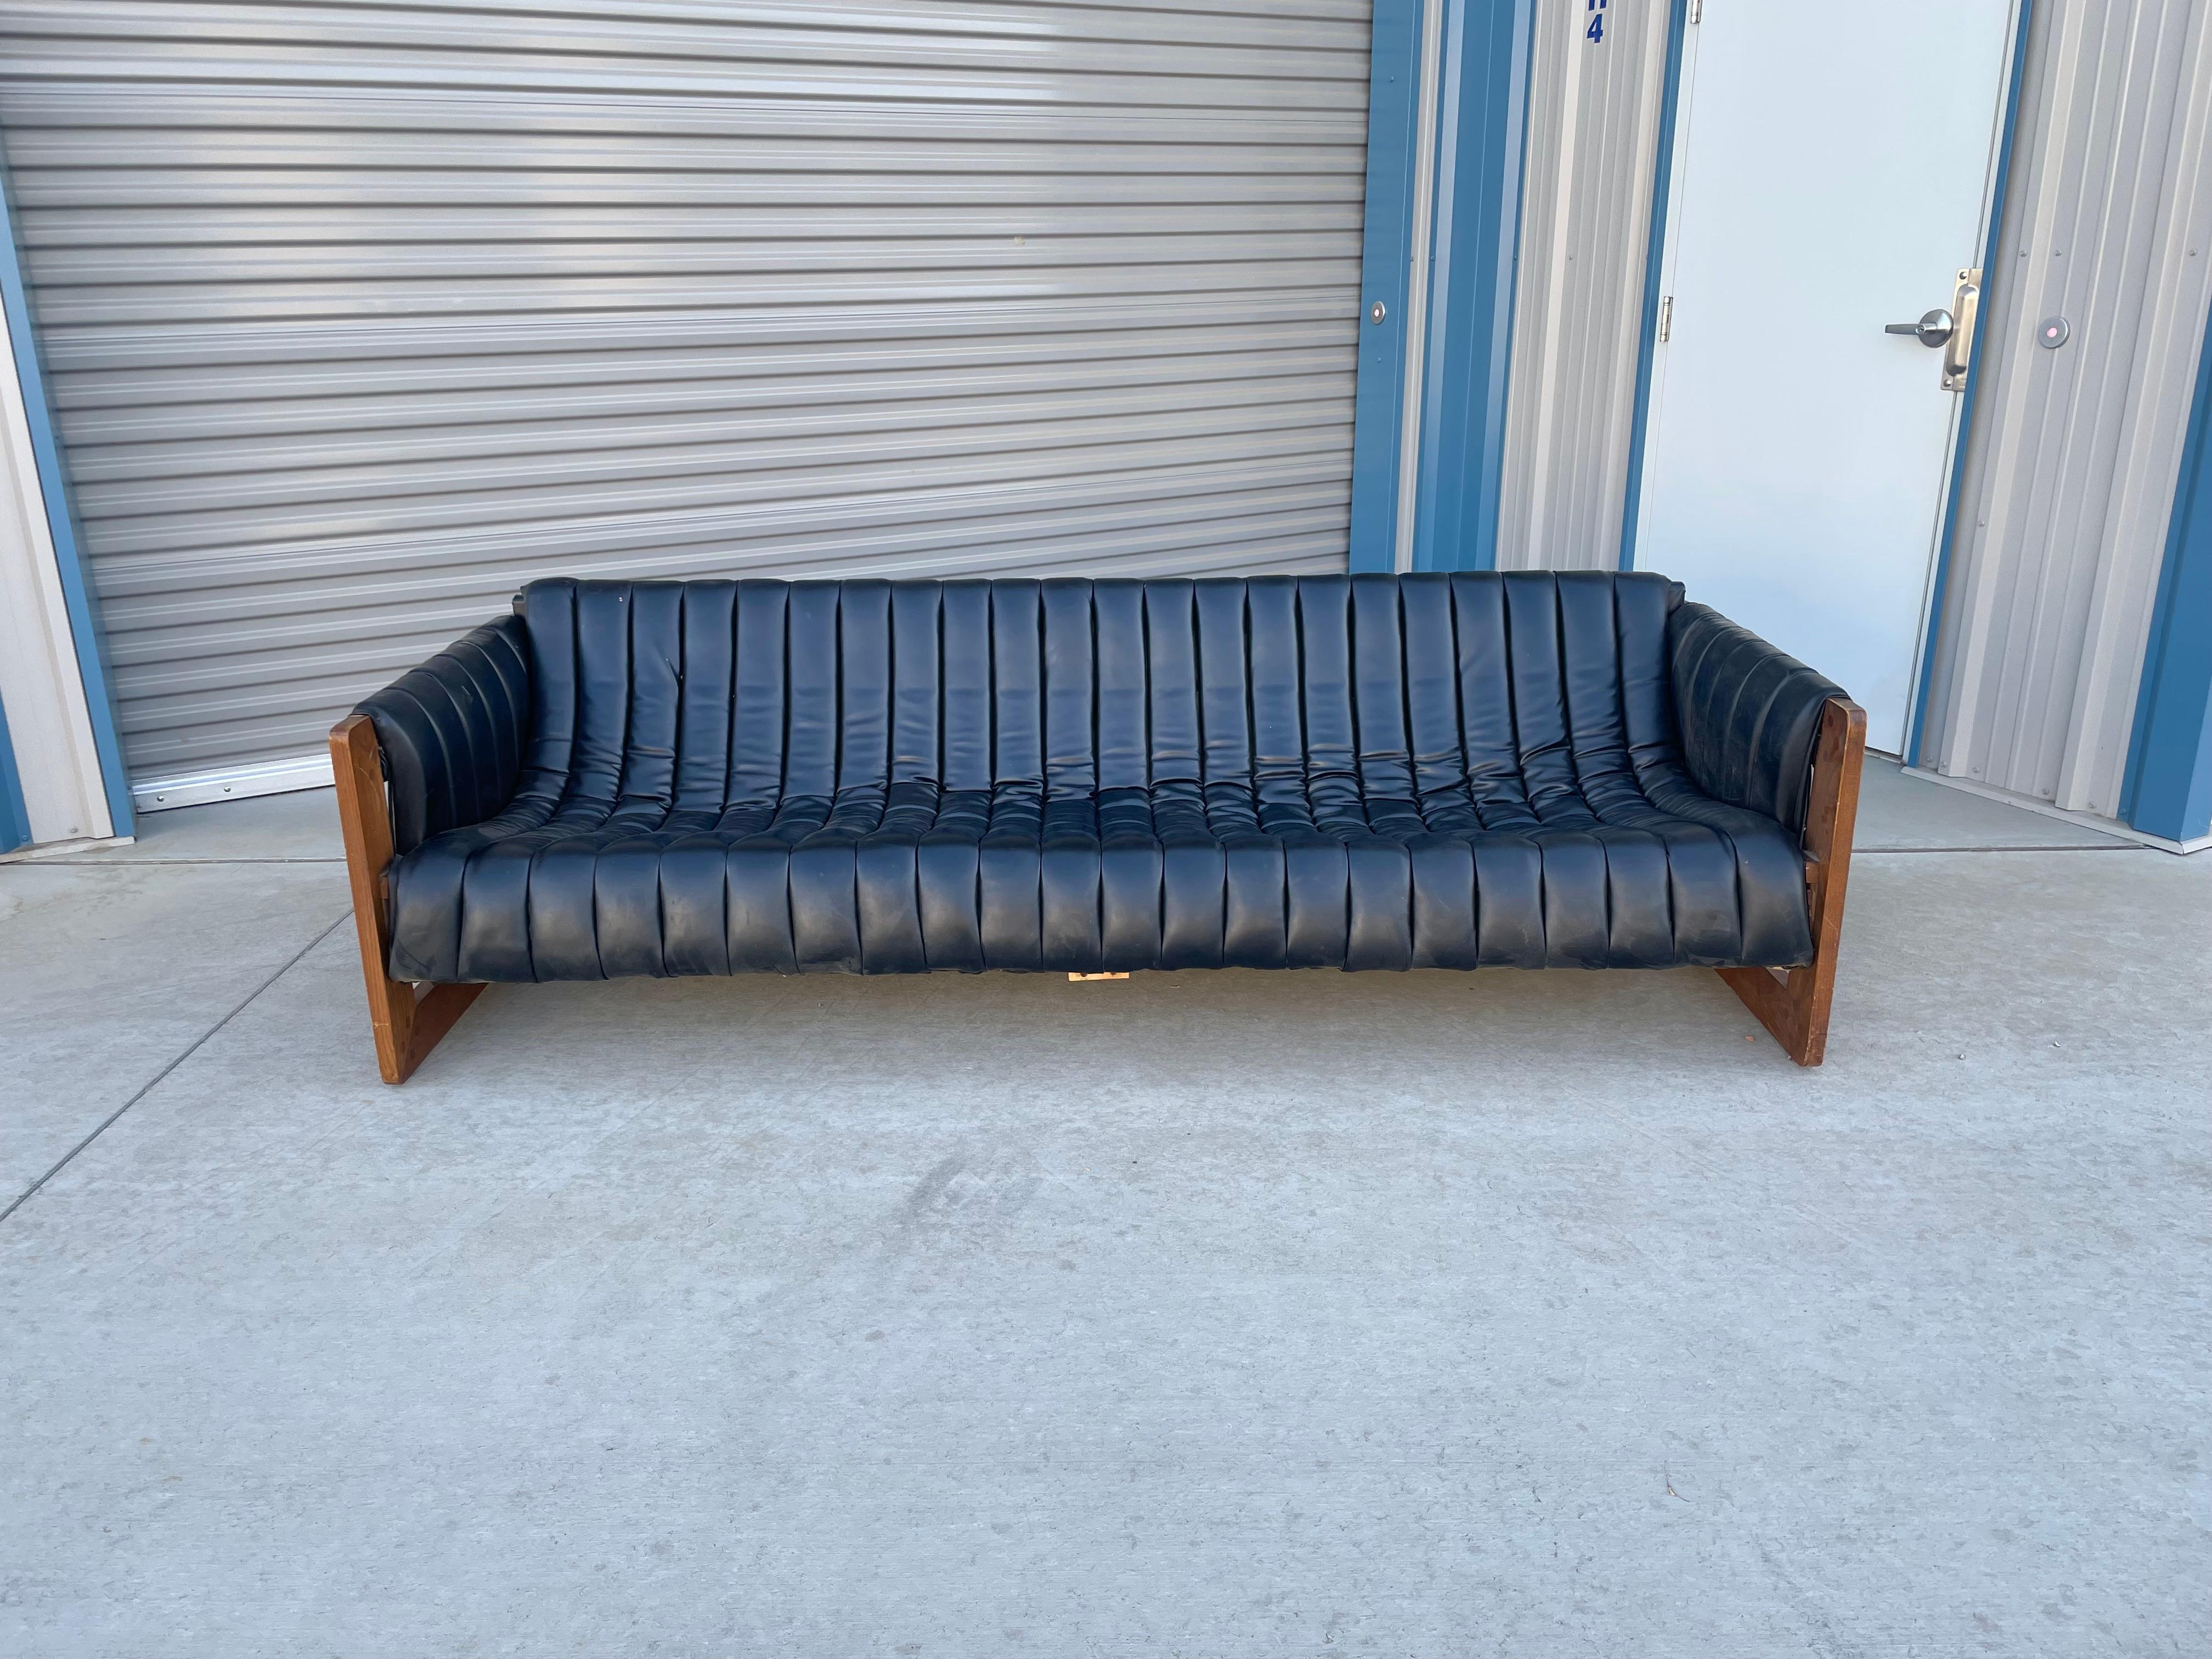 Canapé en cuir noir Hollywood regency conçu et fabriqué aux États-Unis vers les années 1970. Ce magnifique canapé vintage est doté d'une assise en bandoulière touffetée et de pieds uniques en bois dur de noyer, ce qui en fait une pièce unique. Ce